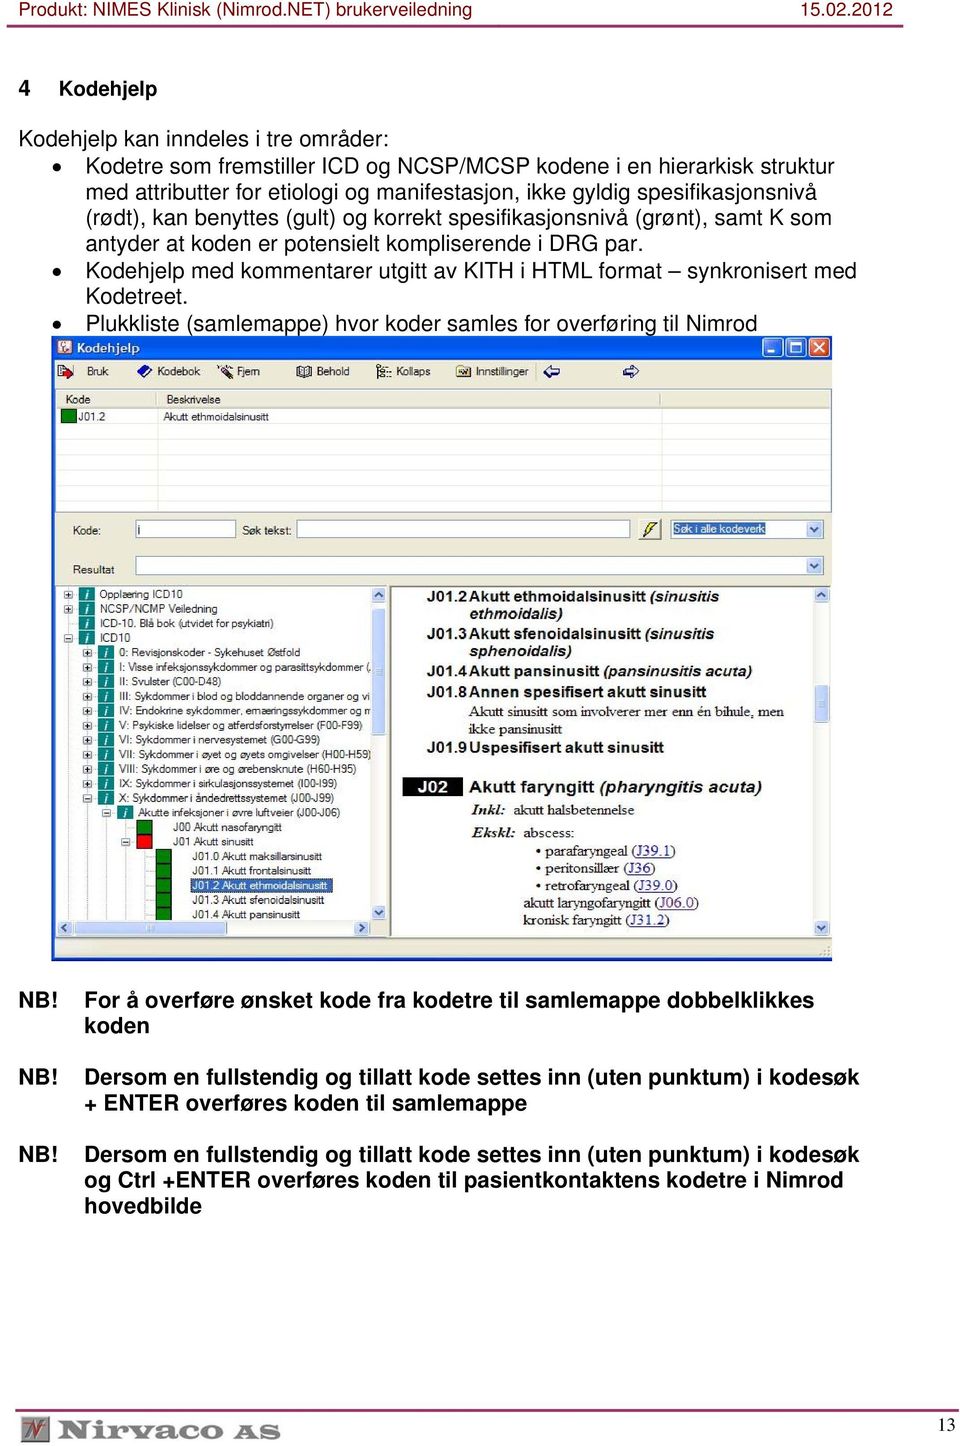 Kodehjelp med kommentarer utgitt av KITH i HTML format synkronisert med Kodetreet.